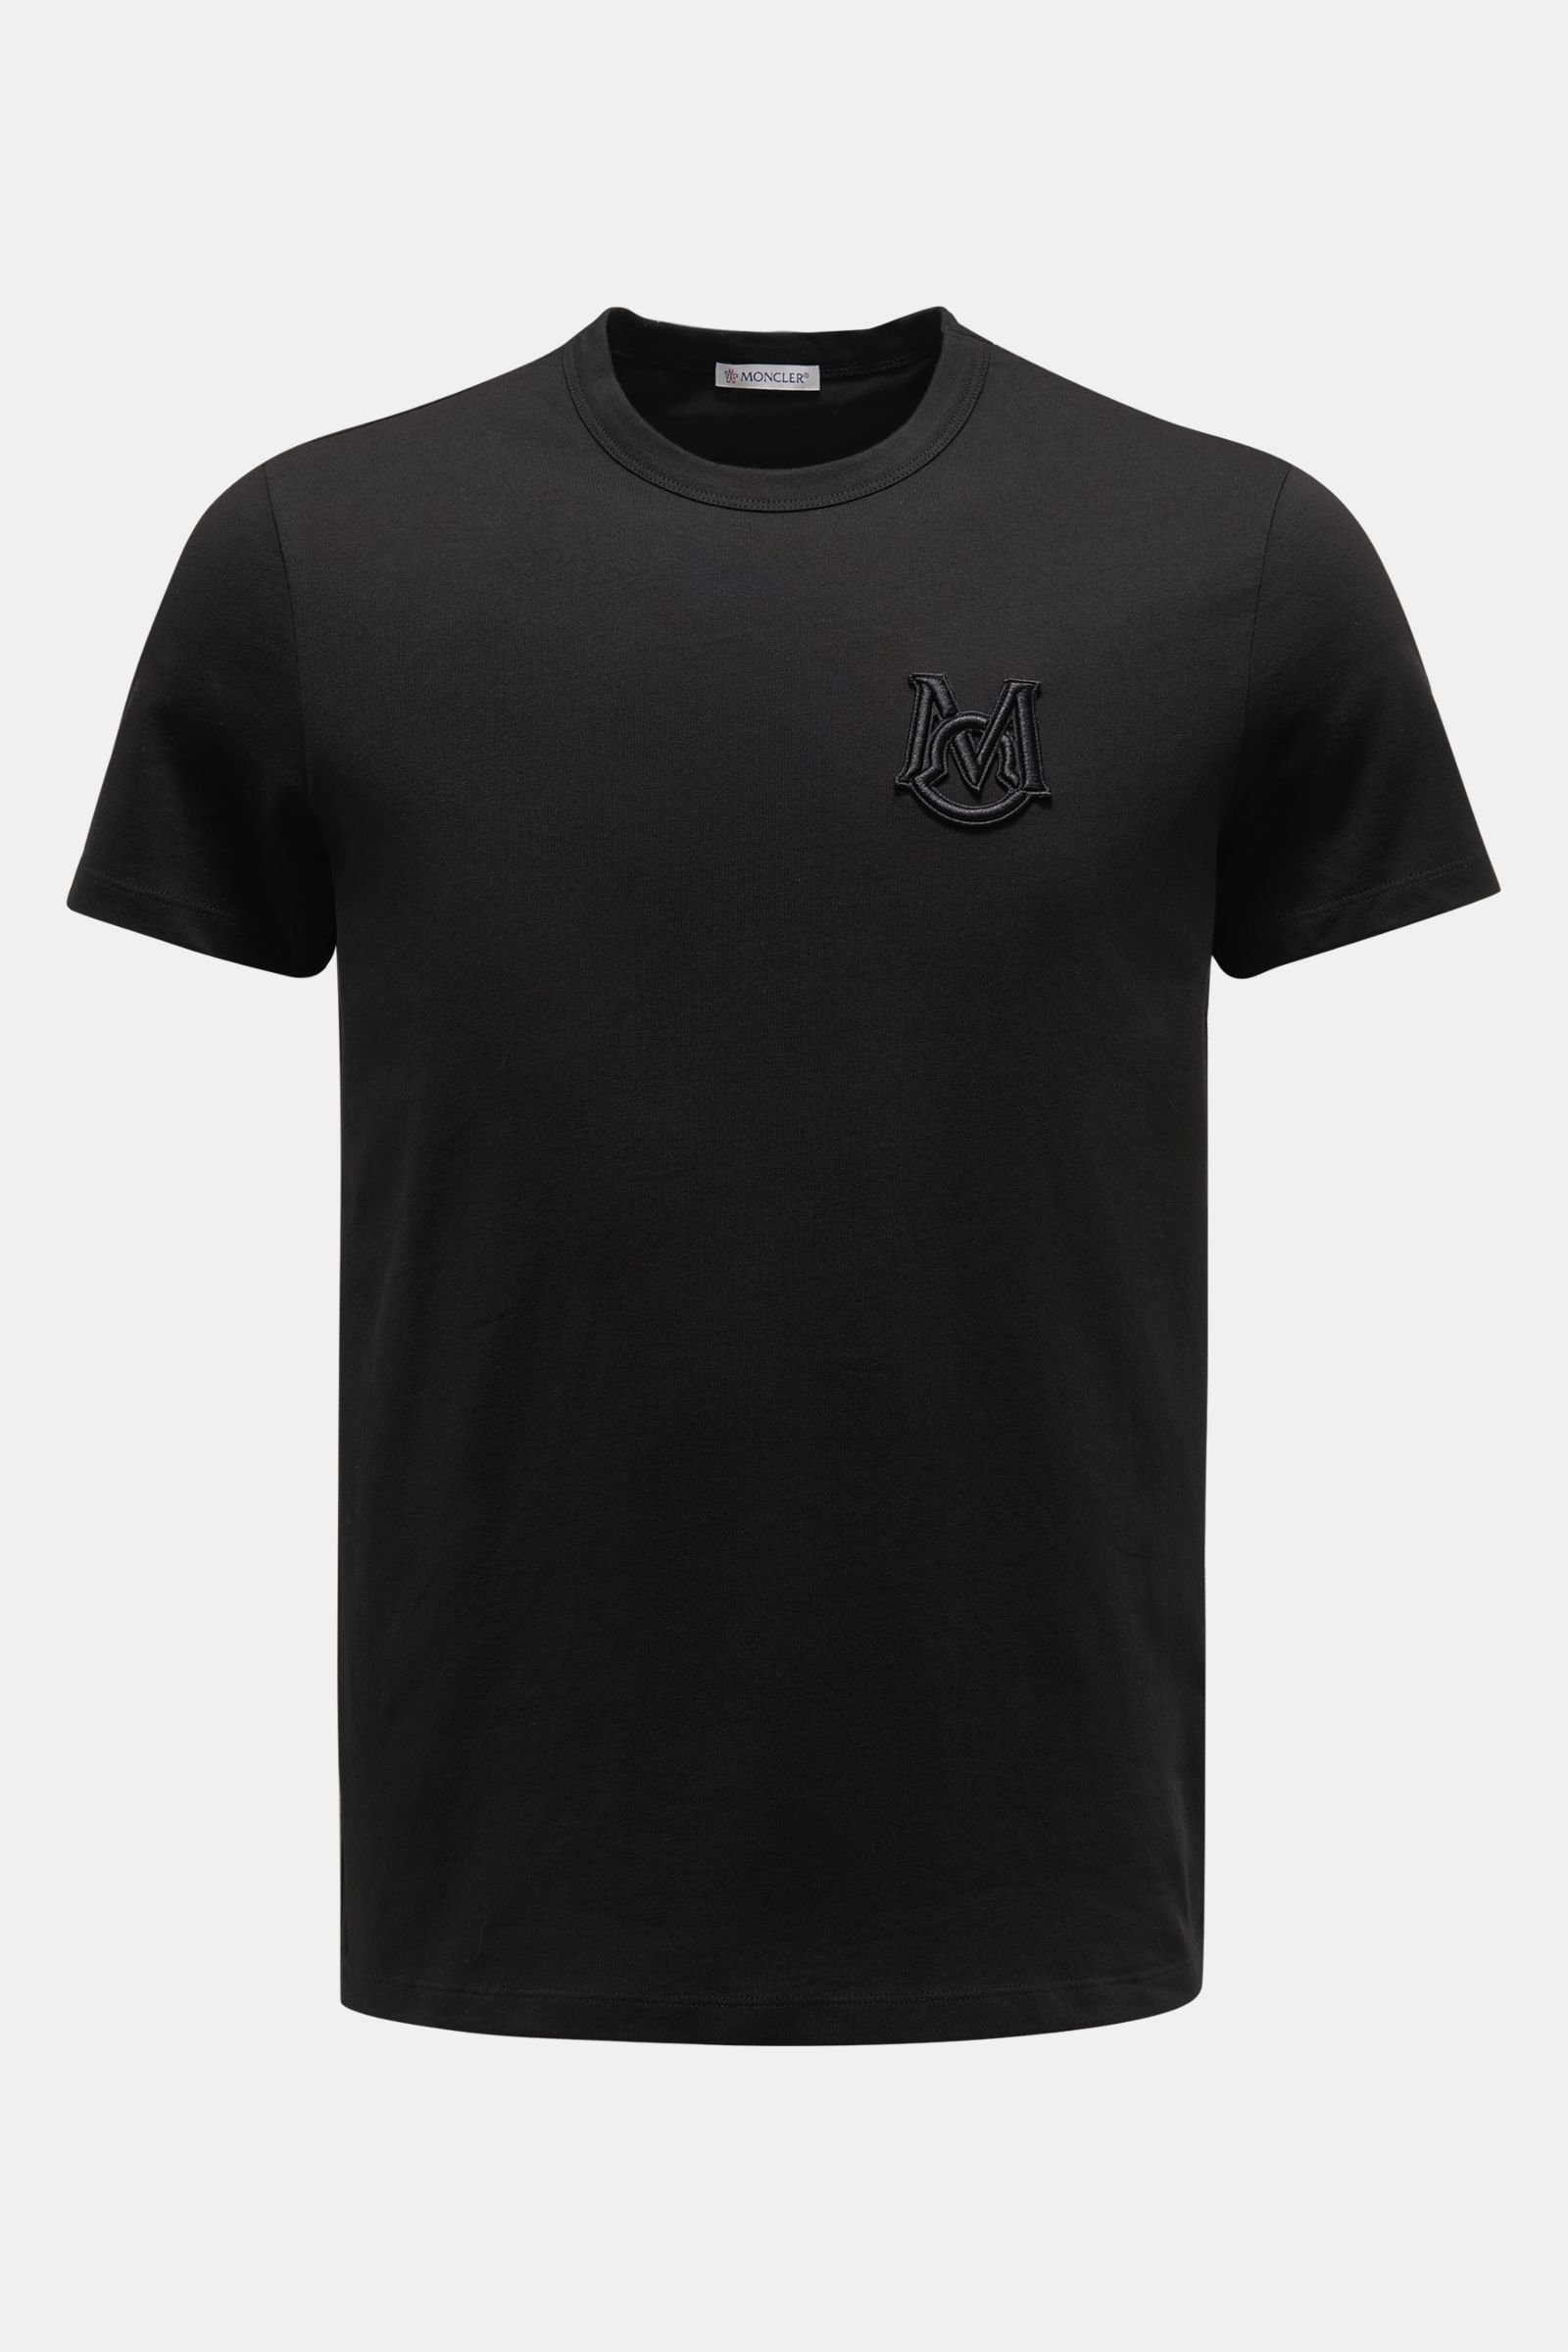 Rundhals-T-Shirt schwarz 